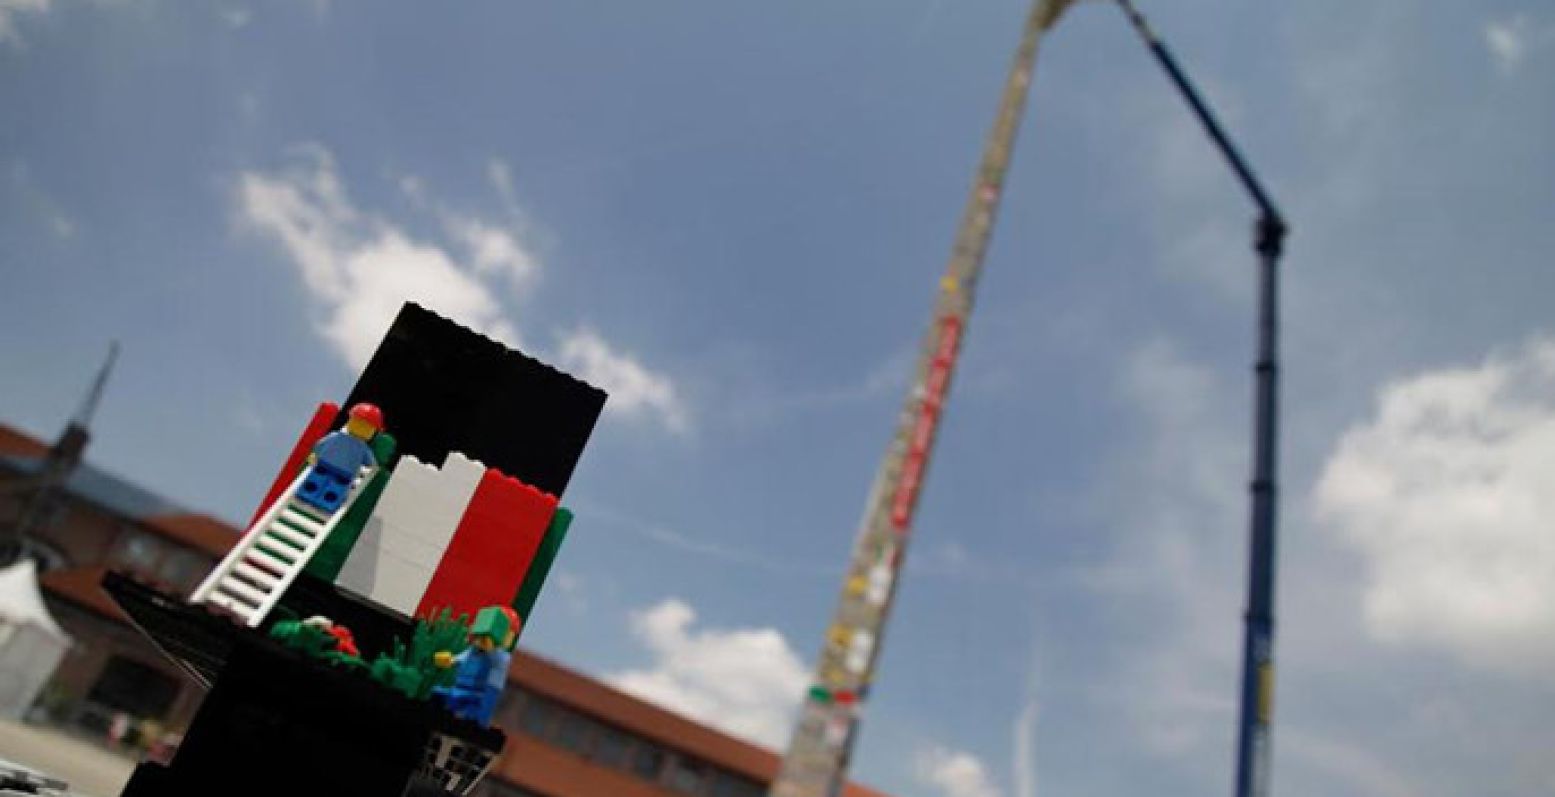 Bouw jij mee aan de grootste LEGO® toren ter wereld?